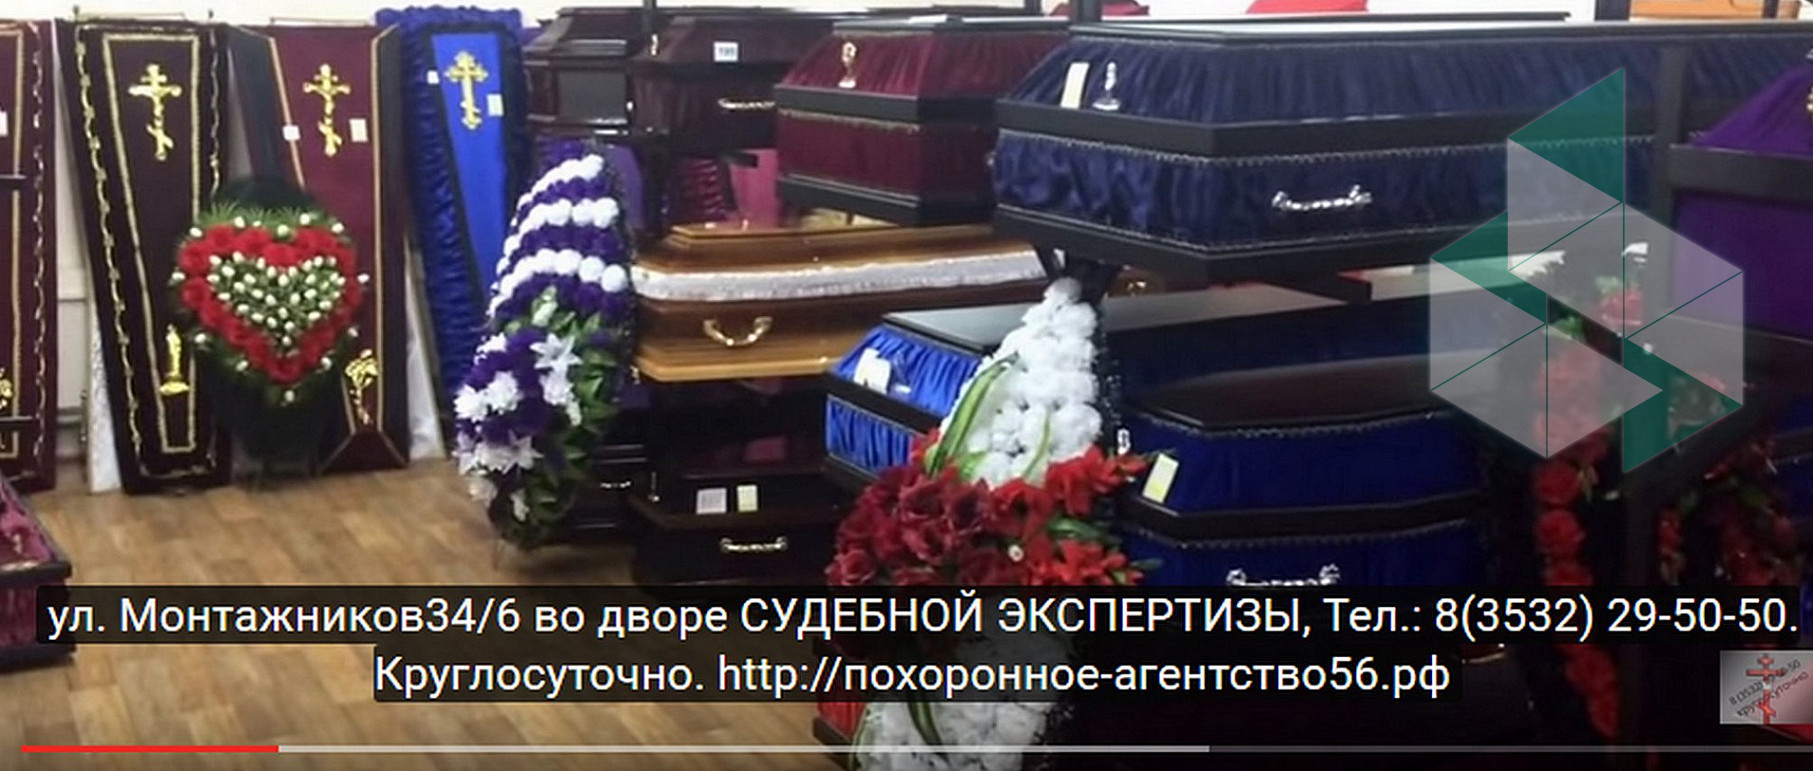 Уральские пельмени похоронен бюро. Похоронное агентство Оренбург. Похоронное агентство Сочи. Похоронное бюро в Японии.